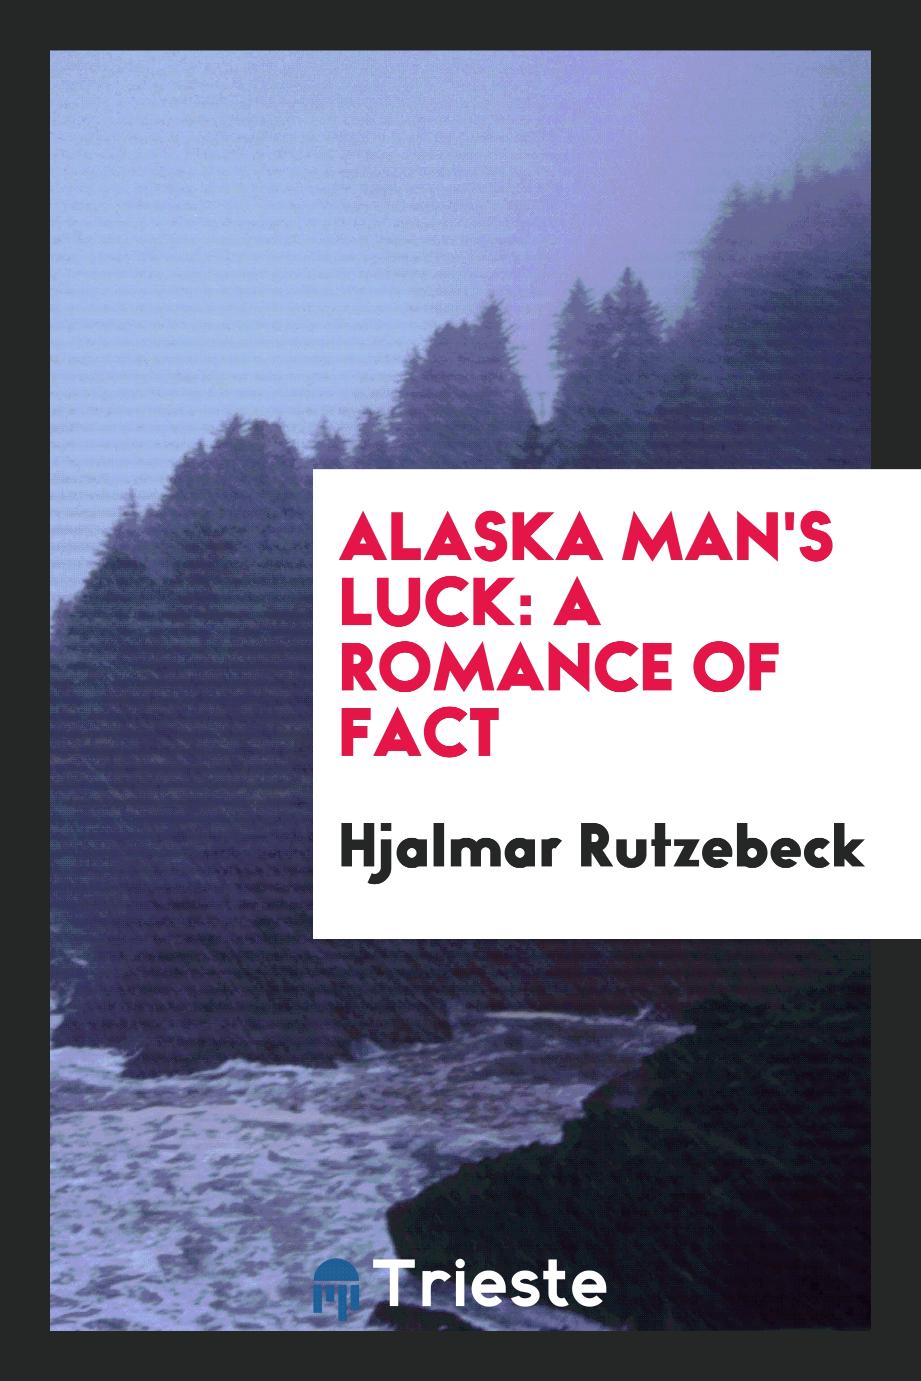 Alaska man's luck: a romance of fact